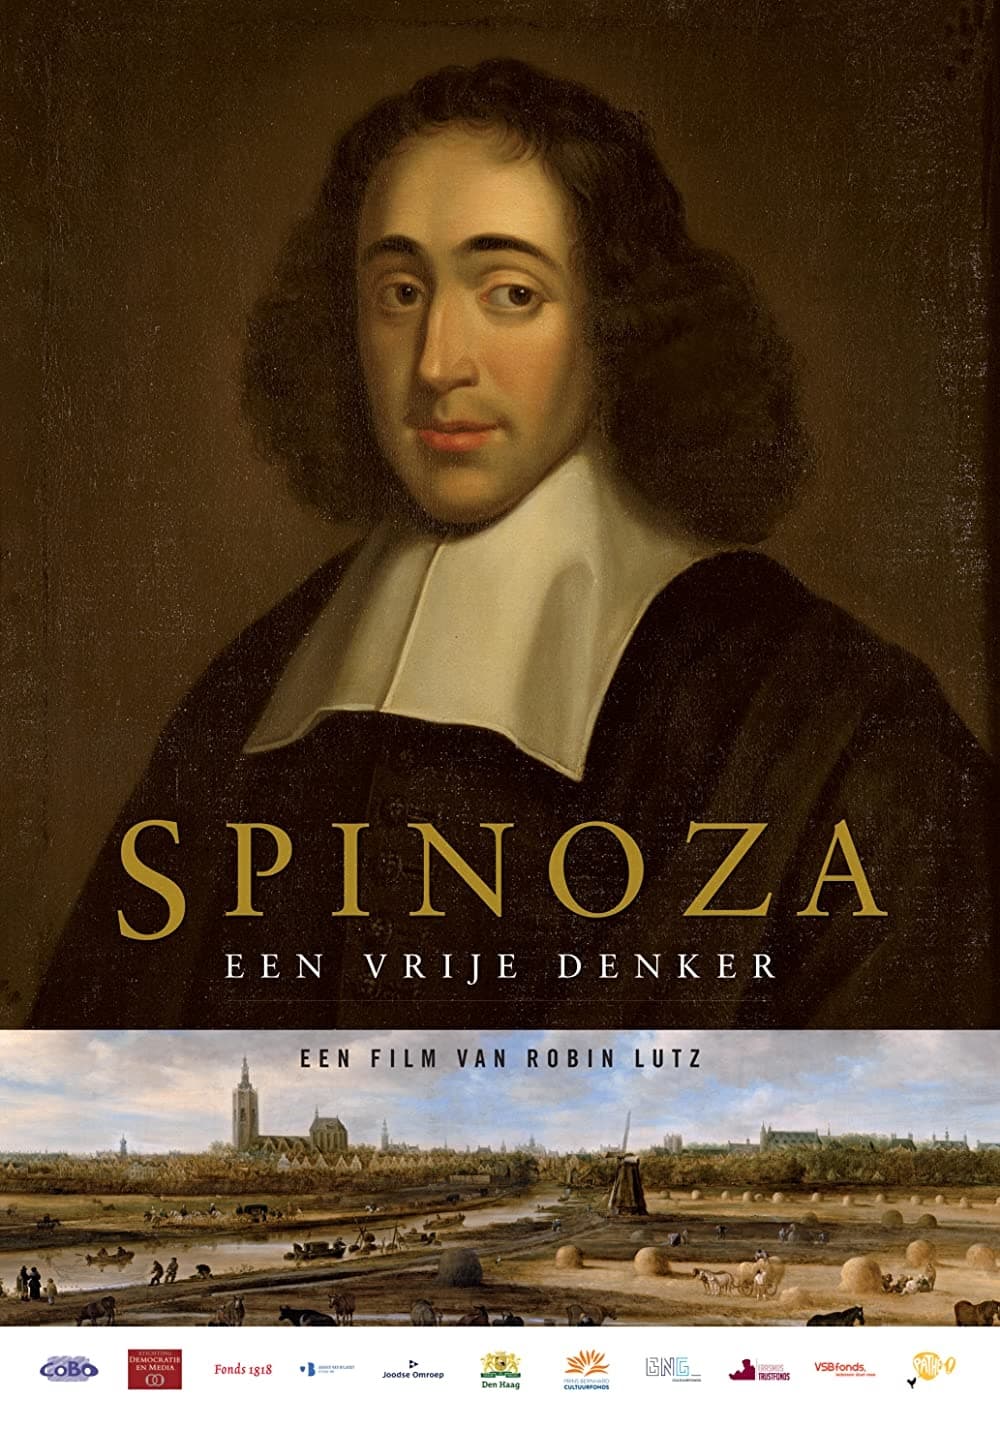 Spinoza: A Free Thinker